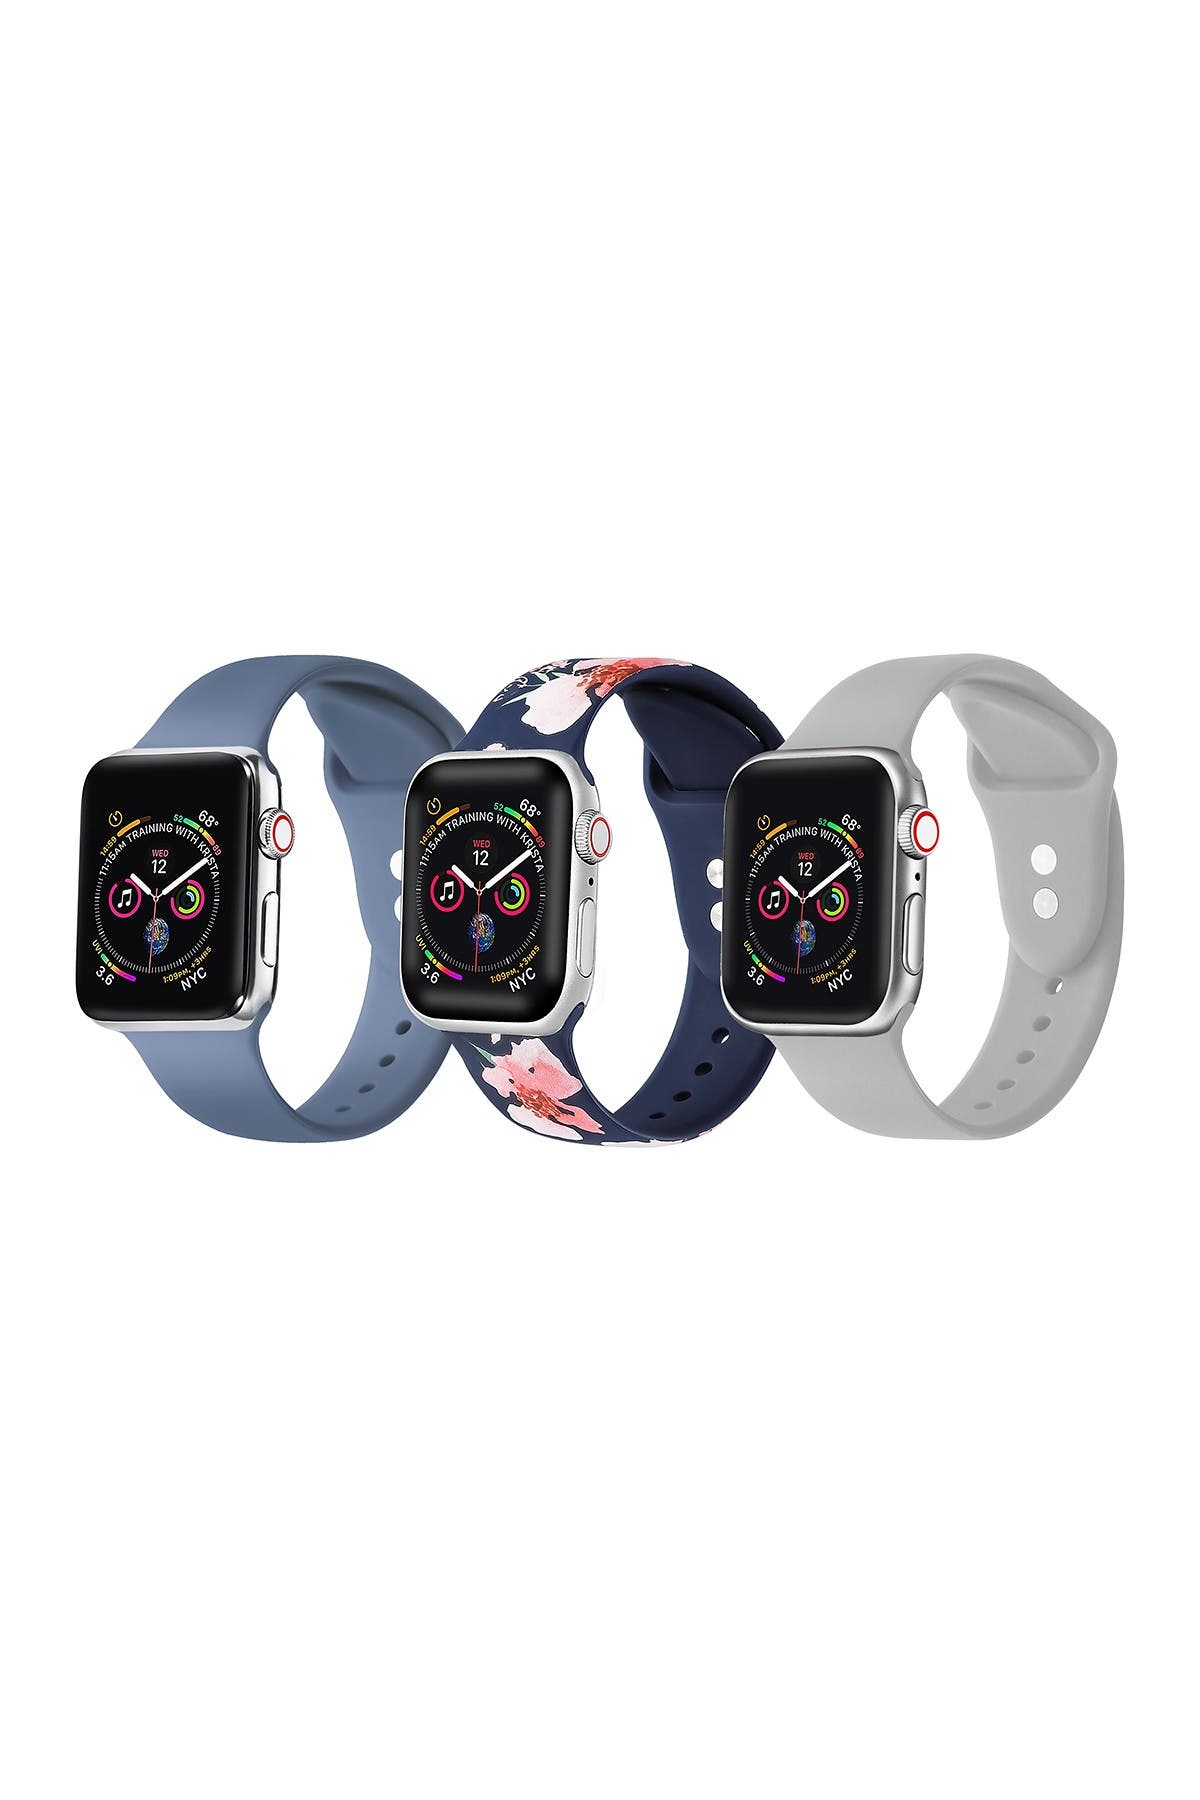 Сменный ремешок для нескольких Apple Watch — набор из 3 шт. THE POSH TECH